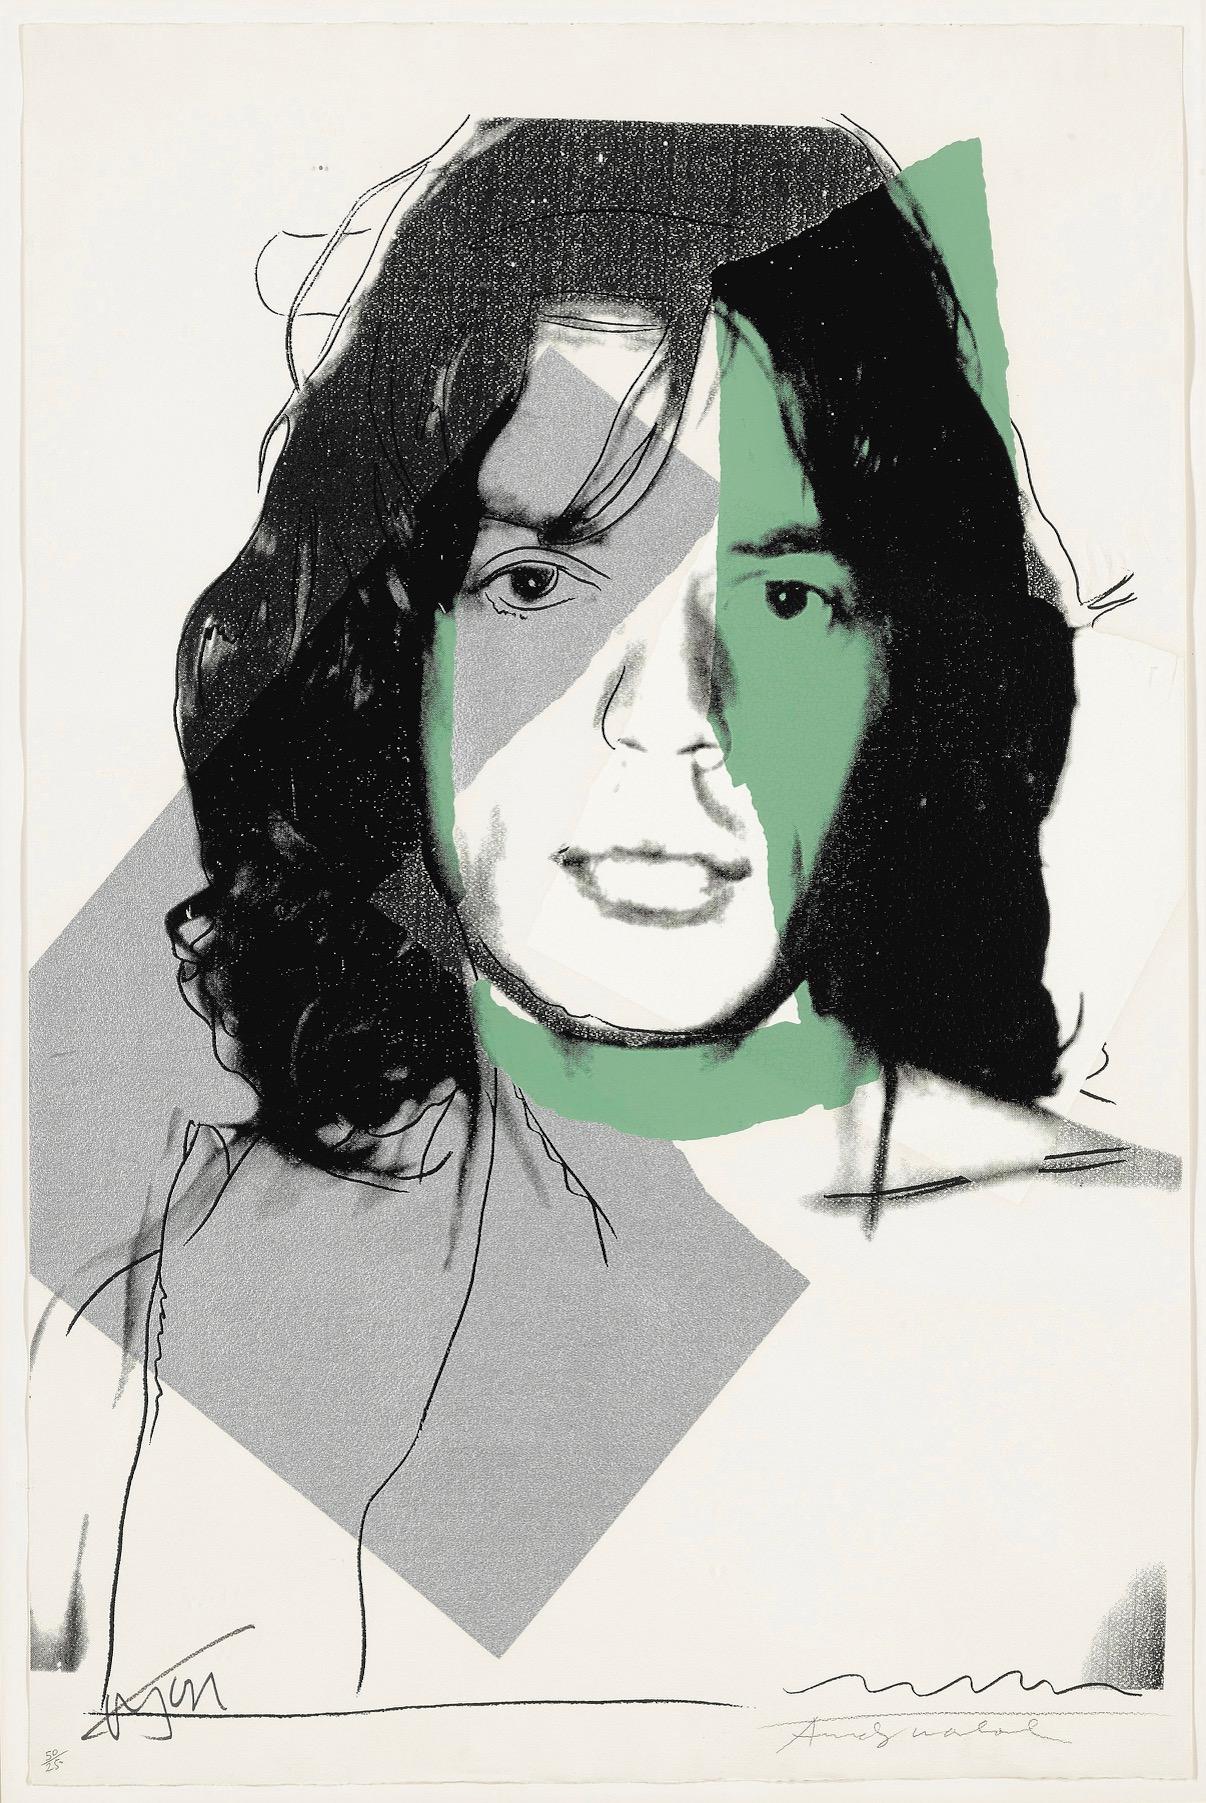 Andy Warhol Portrait Print - Mick Jagger F&S II.138